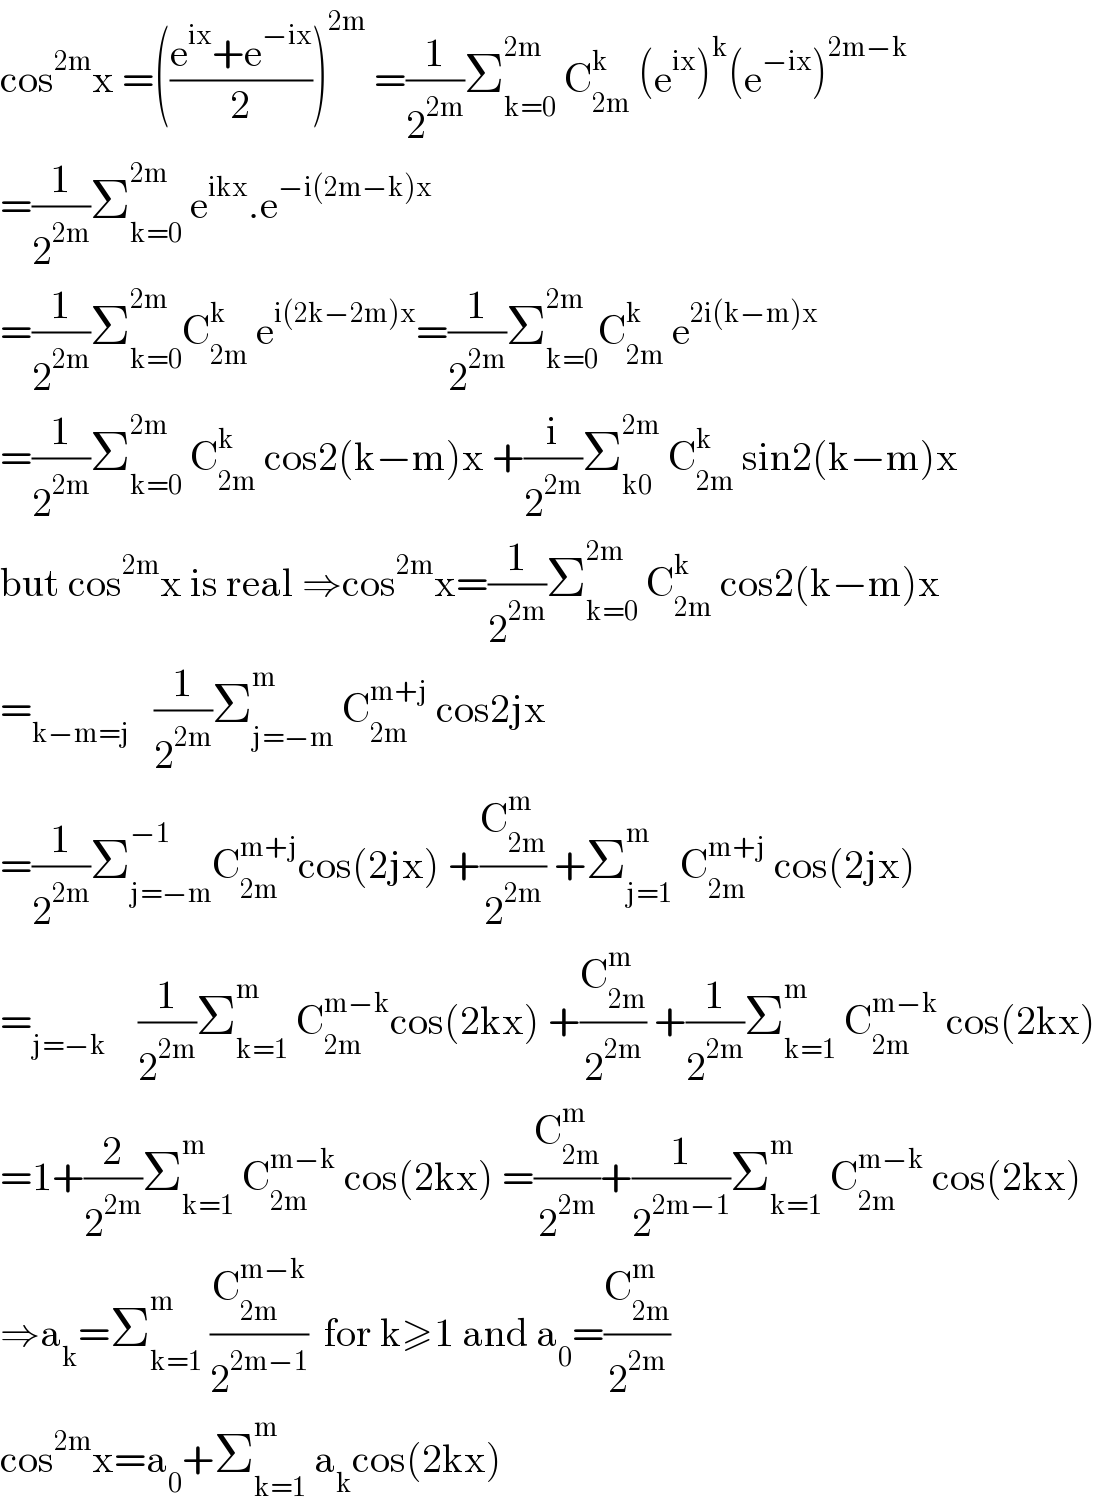 cos^(2m) x =(((e^(ix) +e^(−ix) )/2))^(2m)  =(1/2^(2m) )Σ_(k=0) ^(2m)  C_(2m) ^k  (e^(ix) )^k (e^(−ix) )^(2m−k)   =(1/2^(2m) )Σ_(k=0) ^(2m)  e^(ikx) .e^(−i(2m−k)x)   =(1/2^(2m) )Σ_(k=0) ^(2m) C_(2m) ^k  e^(i(2k−2m)x) =(1/2^(2m) )Σ_(k=0) ^(2m) C_(2m) ^k  e^(2i(k−m)x)   =(1/2^(2m) )Σ_(k=0) ^(2m)  C_(2m) ^k  cos2(k−m)x +(i/2^(2m) )Σ_(k0) ^(2m)  C_(2m) ^k  sin2(k−m)x  but cos^(2m) x is real ⇒cos^(2m) x=(1/2^(2m) )Σ_(k=0) ^(2m)  C_(2m) ^k  cos2(k−m)x  =_(k−m=j)    (1/2^(2m) )Σ_(j=−m) ^m  C_(2m) ^(m+j)  cos2jx  =(1/2^(2m) )Σ_(j=−m) ^(−1) C_(2m) ^(m+j) cos(2jx) +(C_(2m) ^m /2^(2m) ) +Σ_(j=1) ^m  C_(2m) ^(m+j)  cos(2jx)  =_(j=−k)     (1/2^(2m) )Σ_(k=1) ^m  C_(2m) ^(m−k) cos(2kx) +(C_(2m) ^m /2^(2m) ) +(1/2^(2m) )Σ_(k=1) ^m  C_(2m) ^(m−k)  cos(2kx)  =1+(2/2^(2m) )Σ_(k=1) ^m  C_(2m) ^(m−k)  cos(2kx) =(C_(2m) ^m /2^(2m) )+(1/2^(2m−1) )Σ_(k=1) ^m  C_(2m) ^(m−k)  cos(2kx)  ⇒a_k =Σ_(k=1) ^m  (C_(2m) ^(m−k) /2^(2m−1) )  for k≥1 and a_0 =(C_(2m) ^m /2^(2m) )  cos^(2m) x=a_0 +Σ_(k=1) ^m  a_k cos(2kx)  